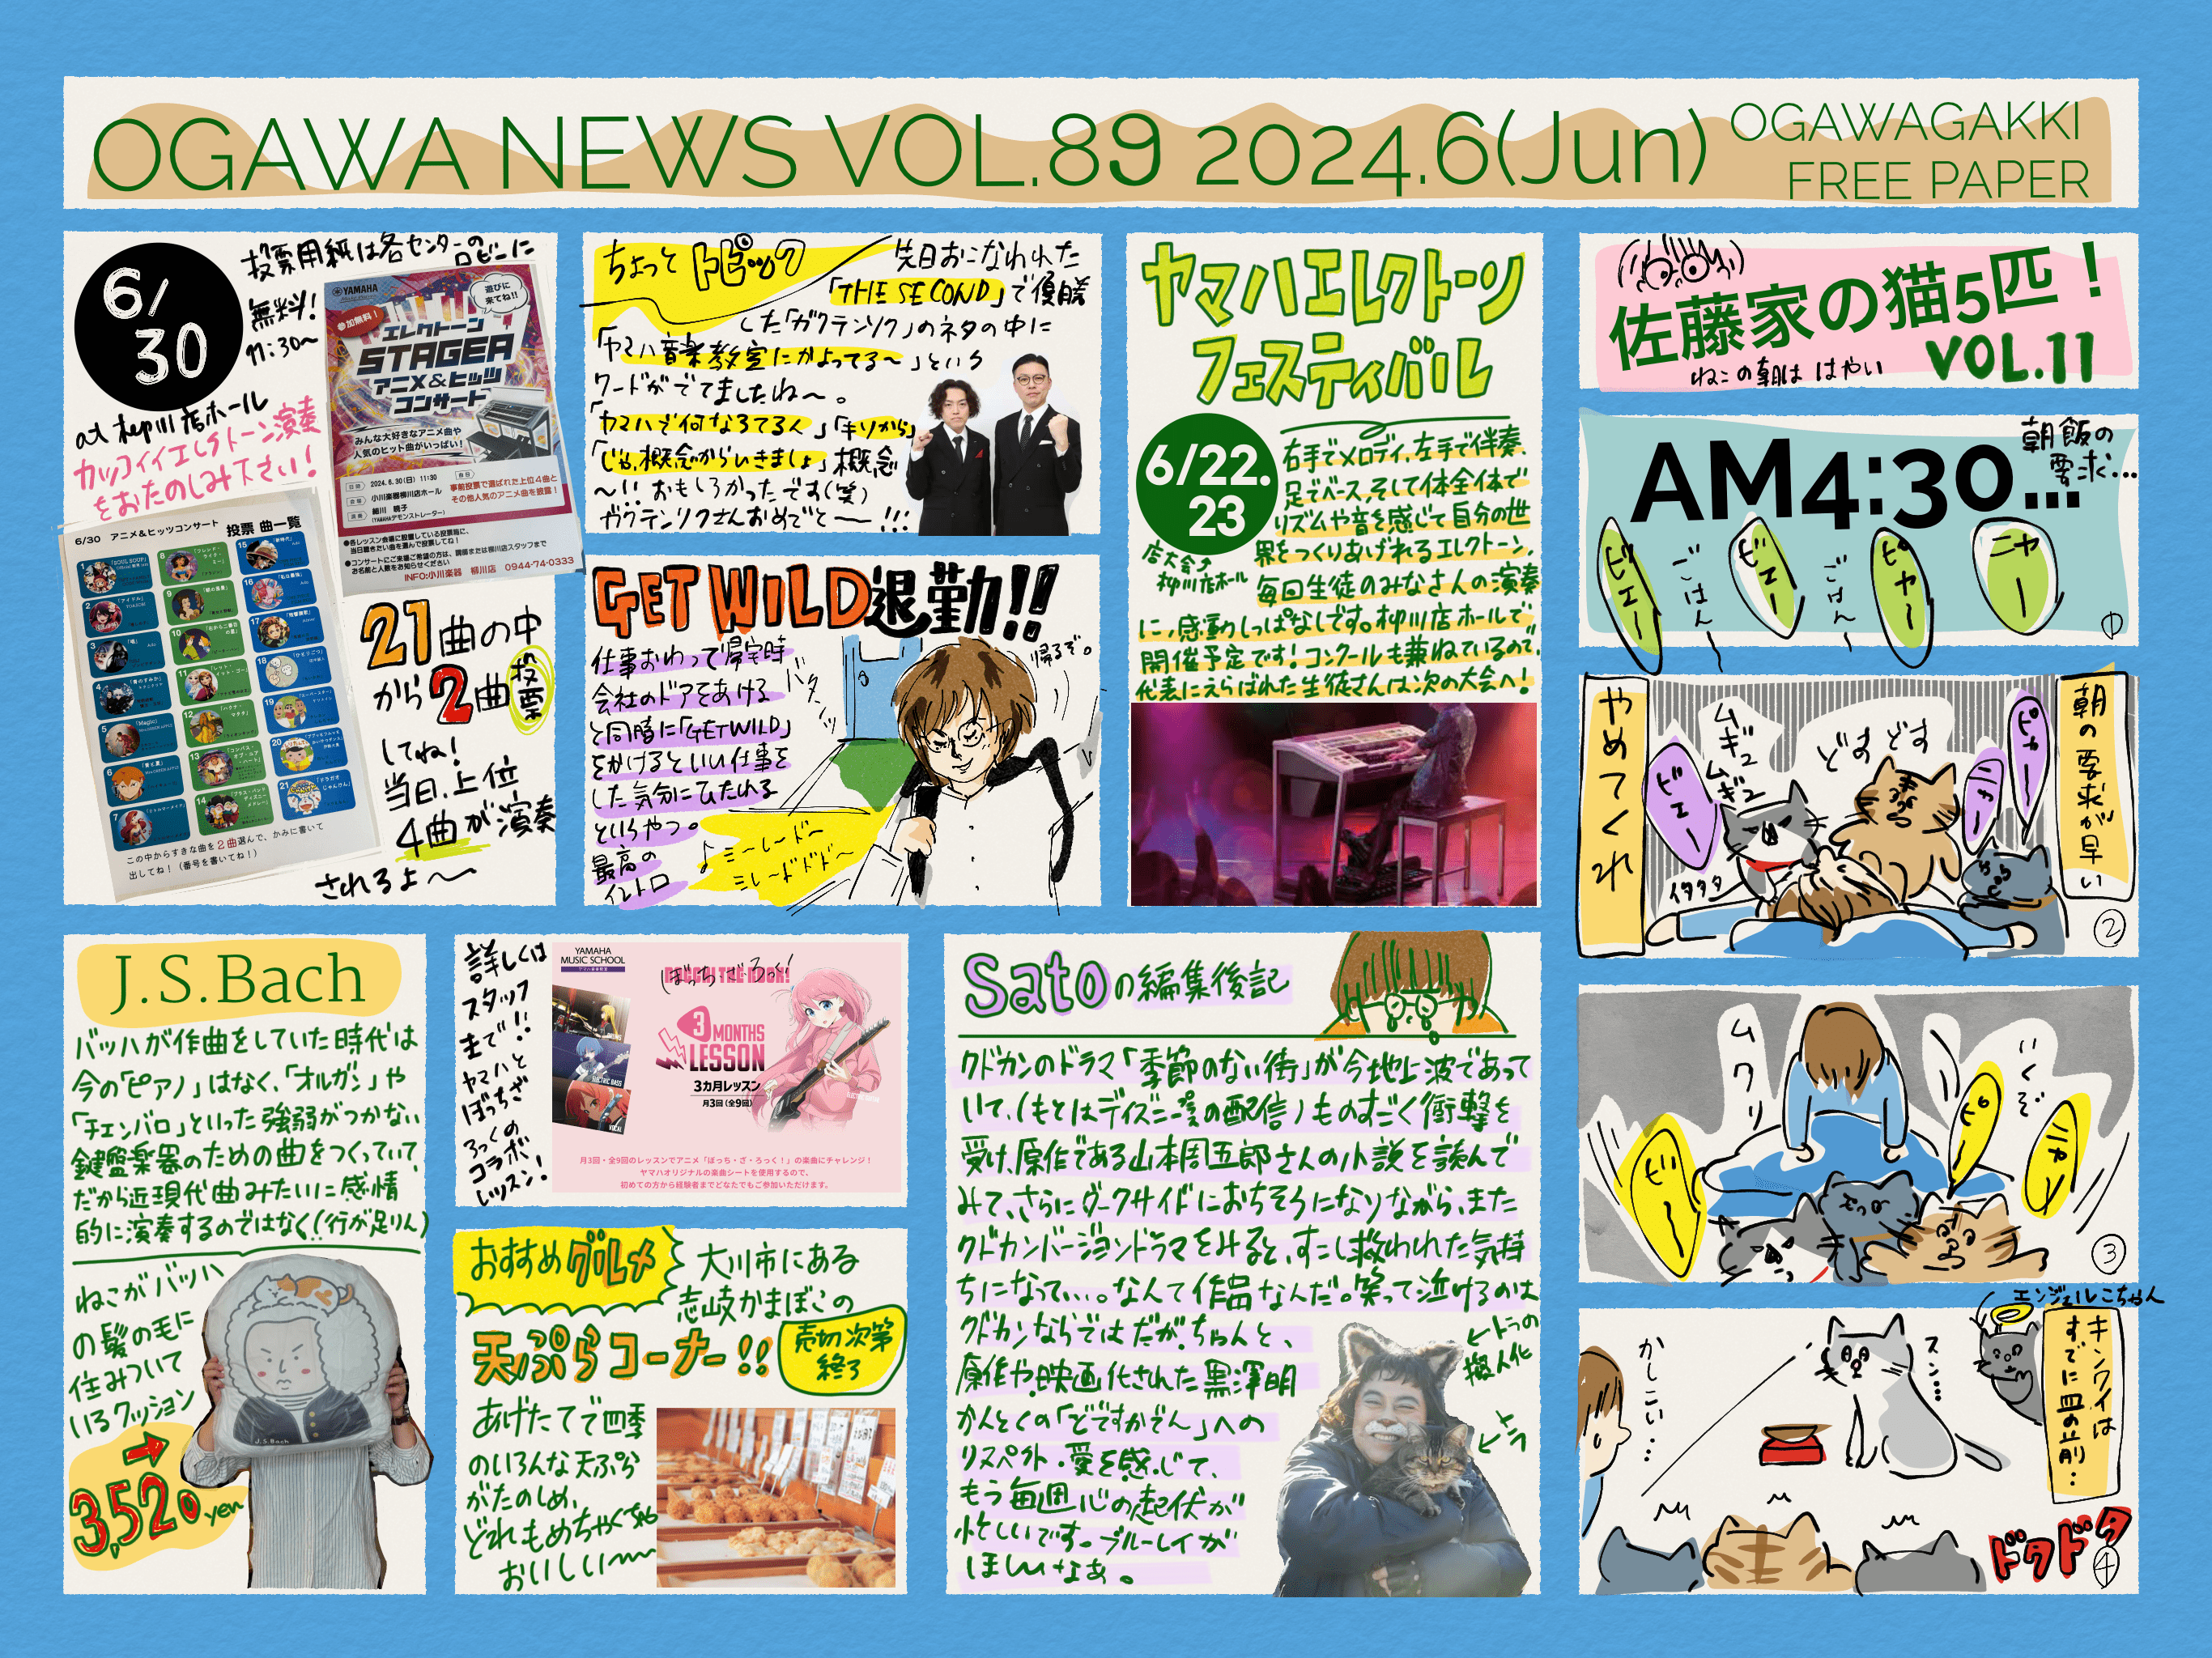 【柳川店フリーペーパー】vol.89 2024年6月号